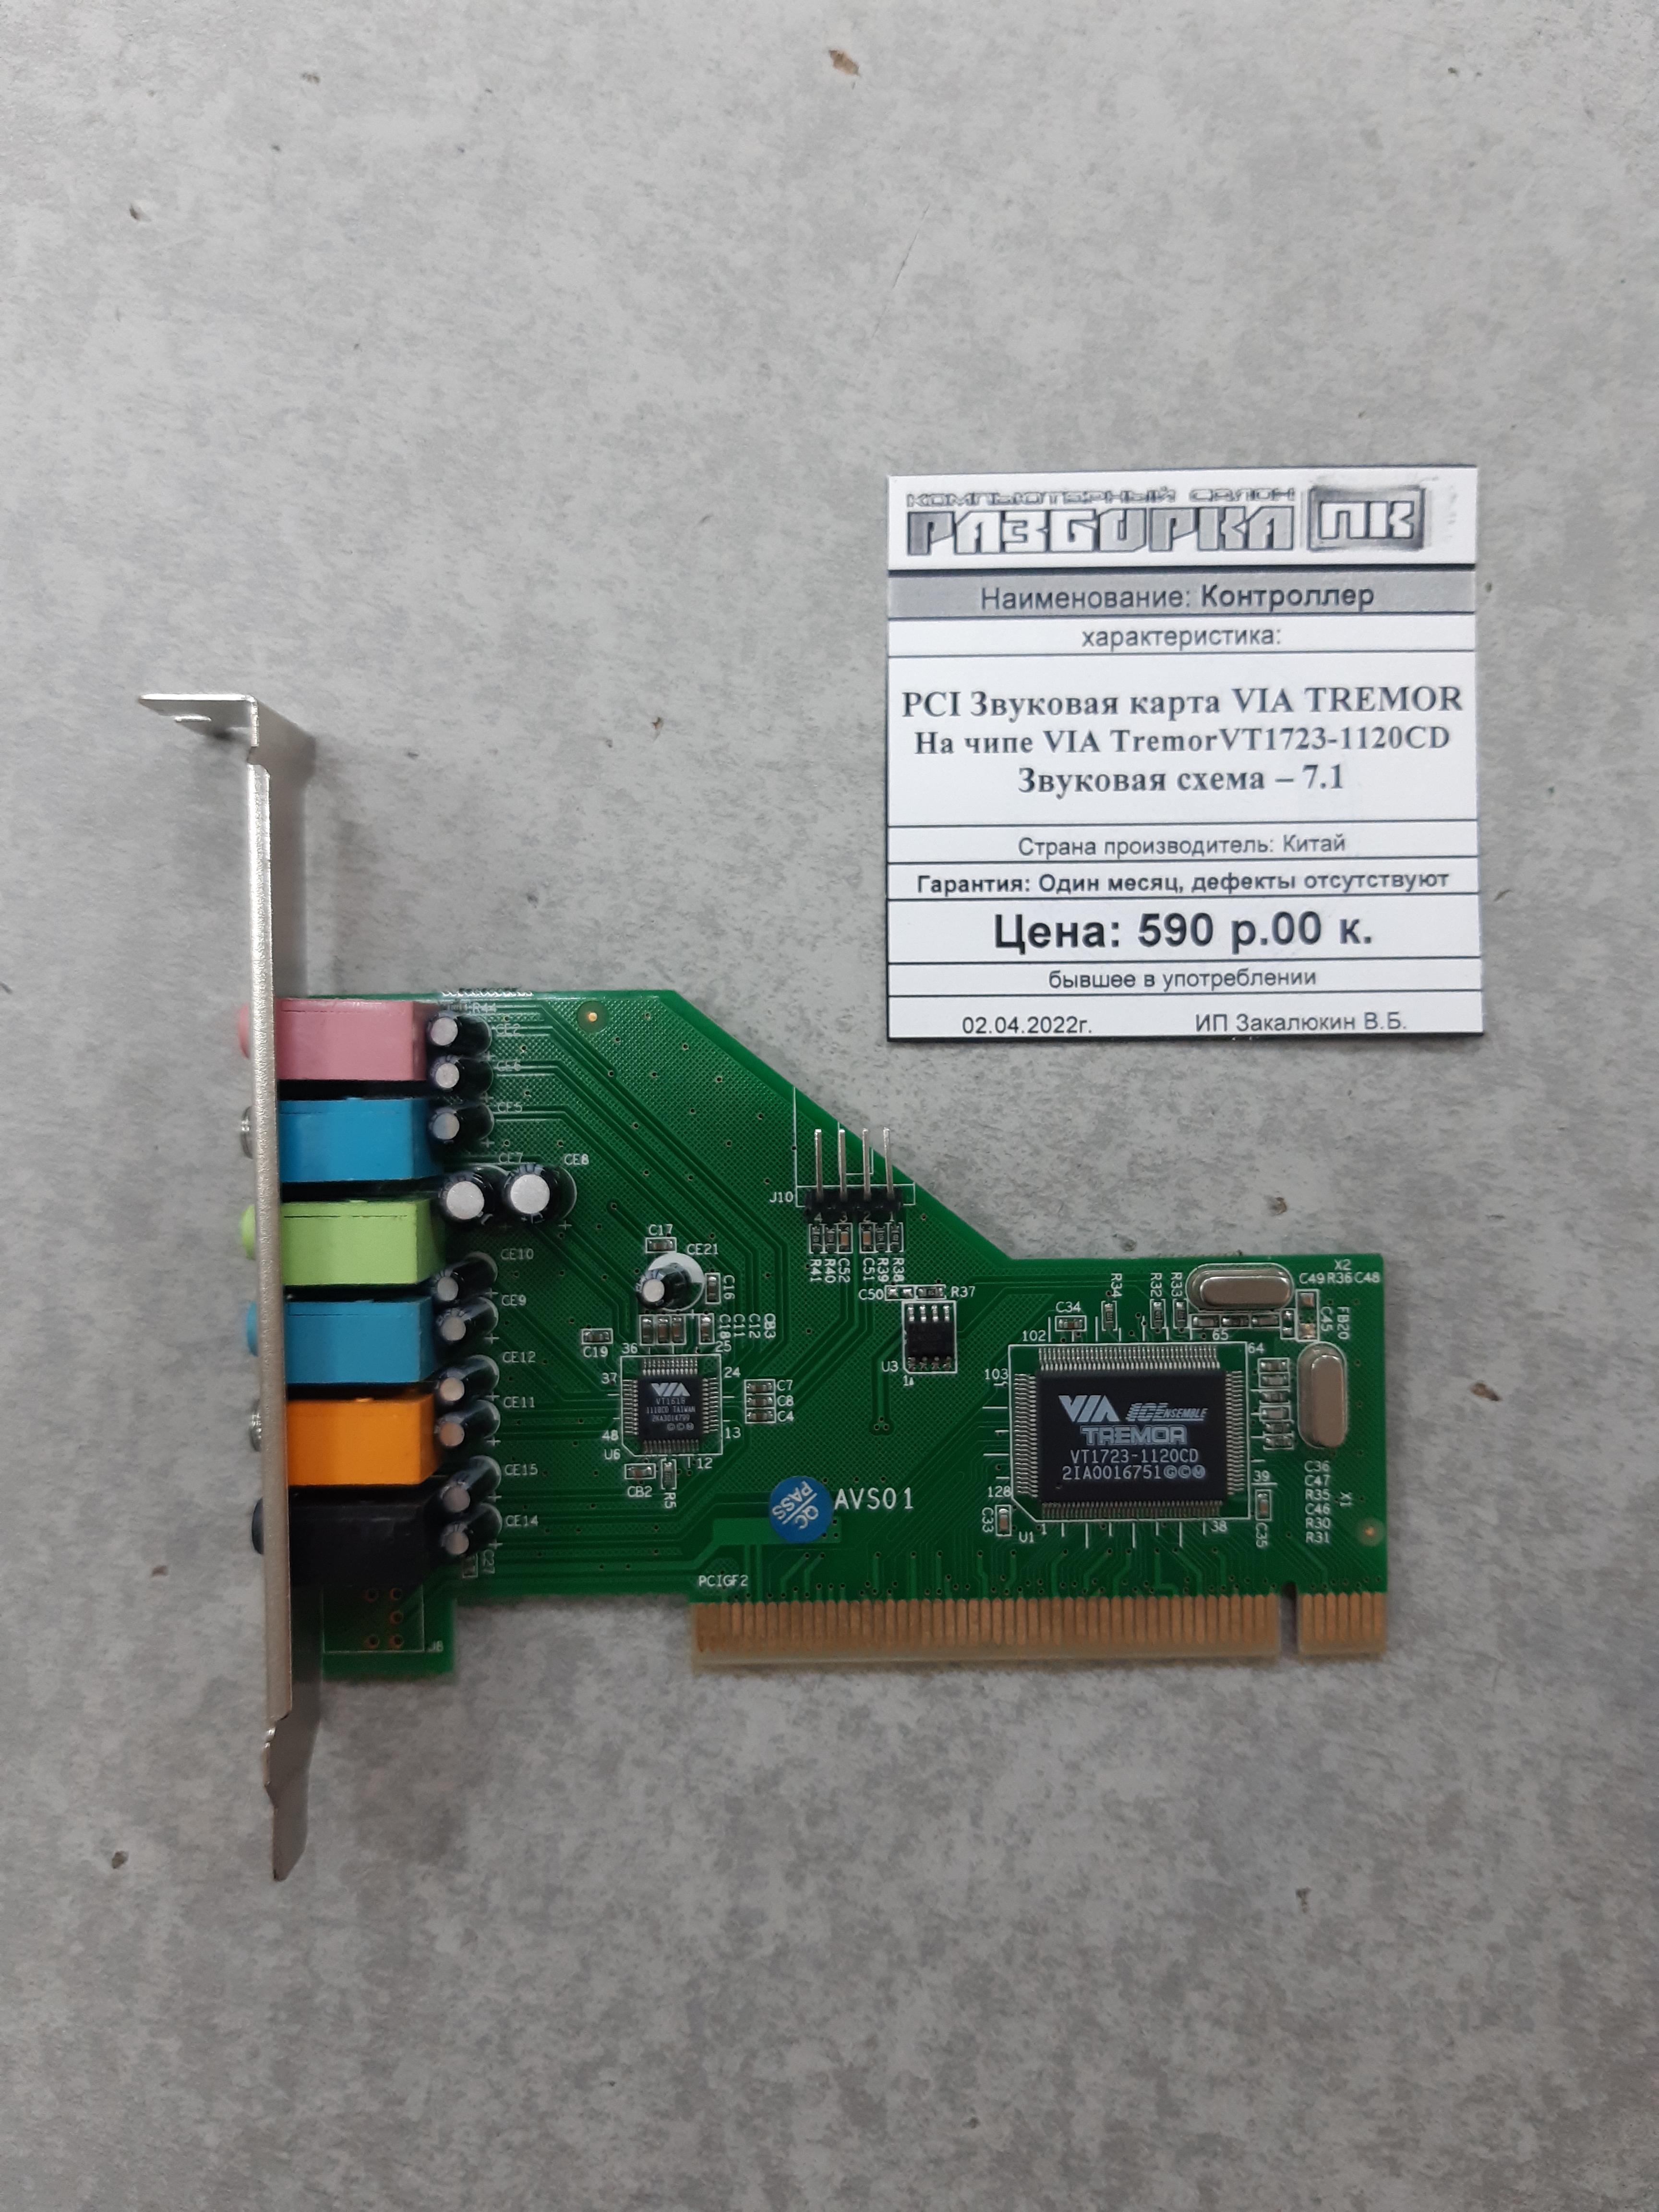 Контроллер PCI Звуковая карта VIA TREMOR